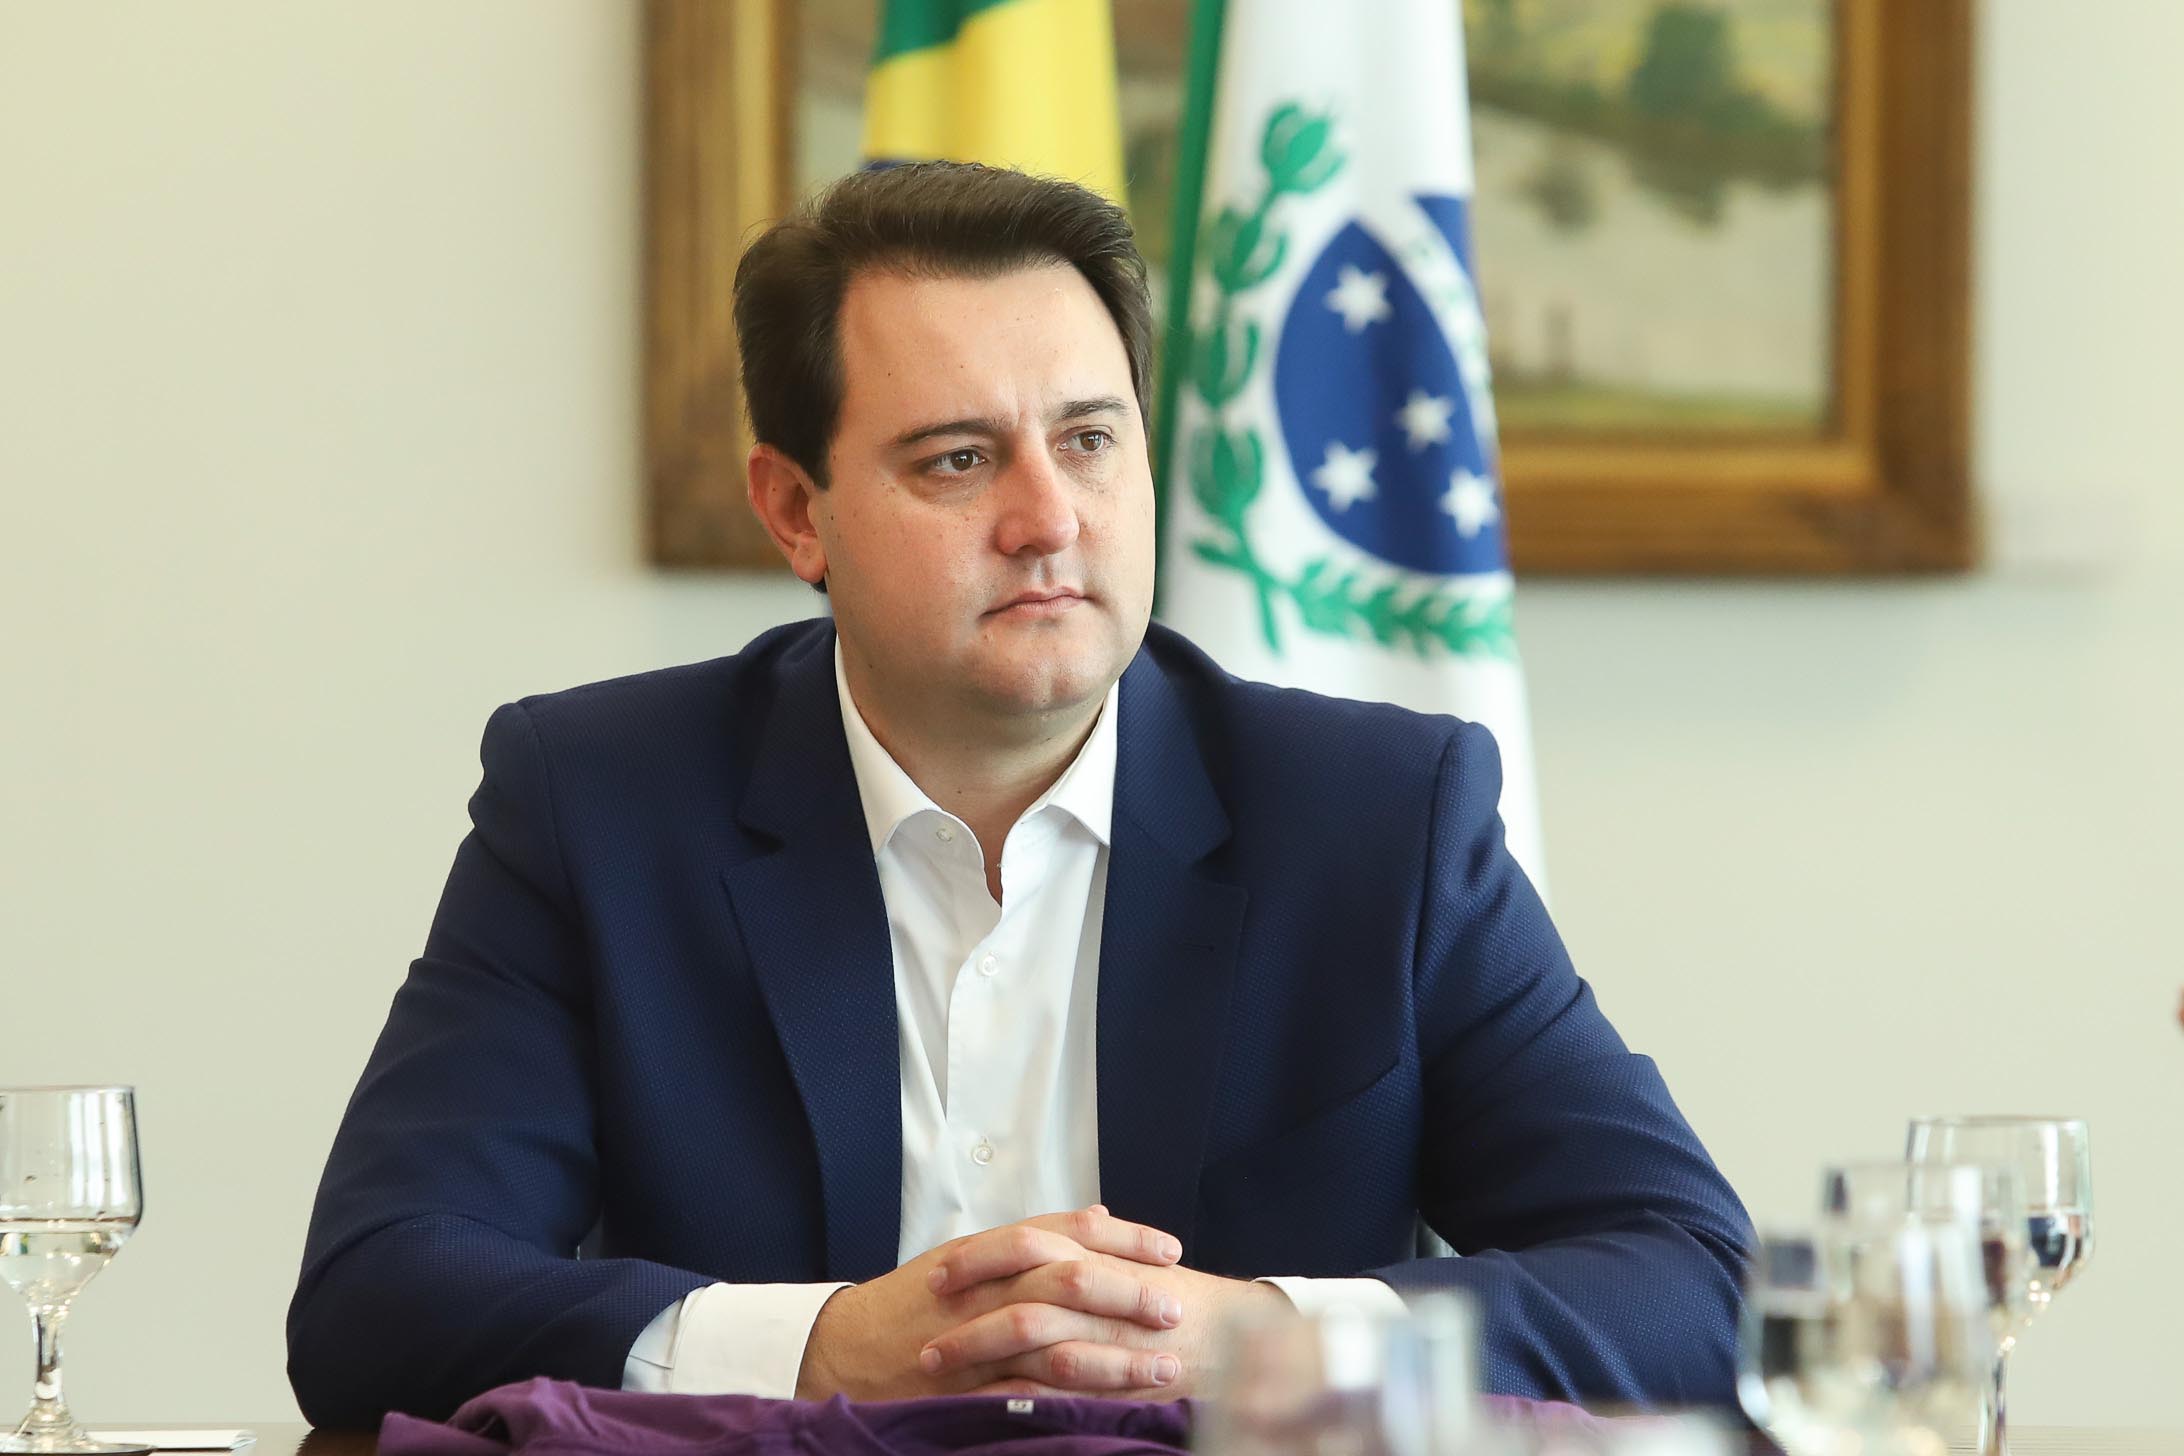  Ratinho Junior não descarta apoio a Bolsonaro